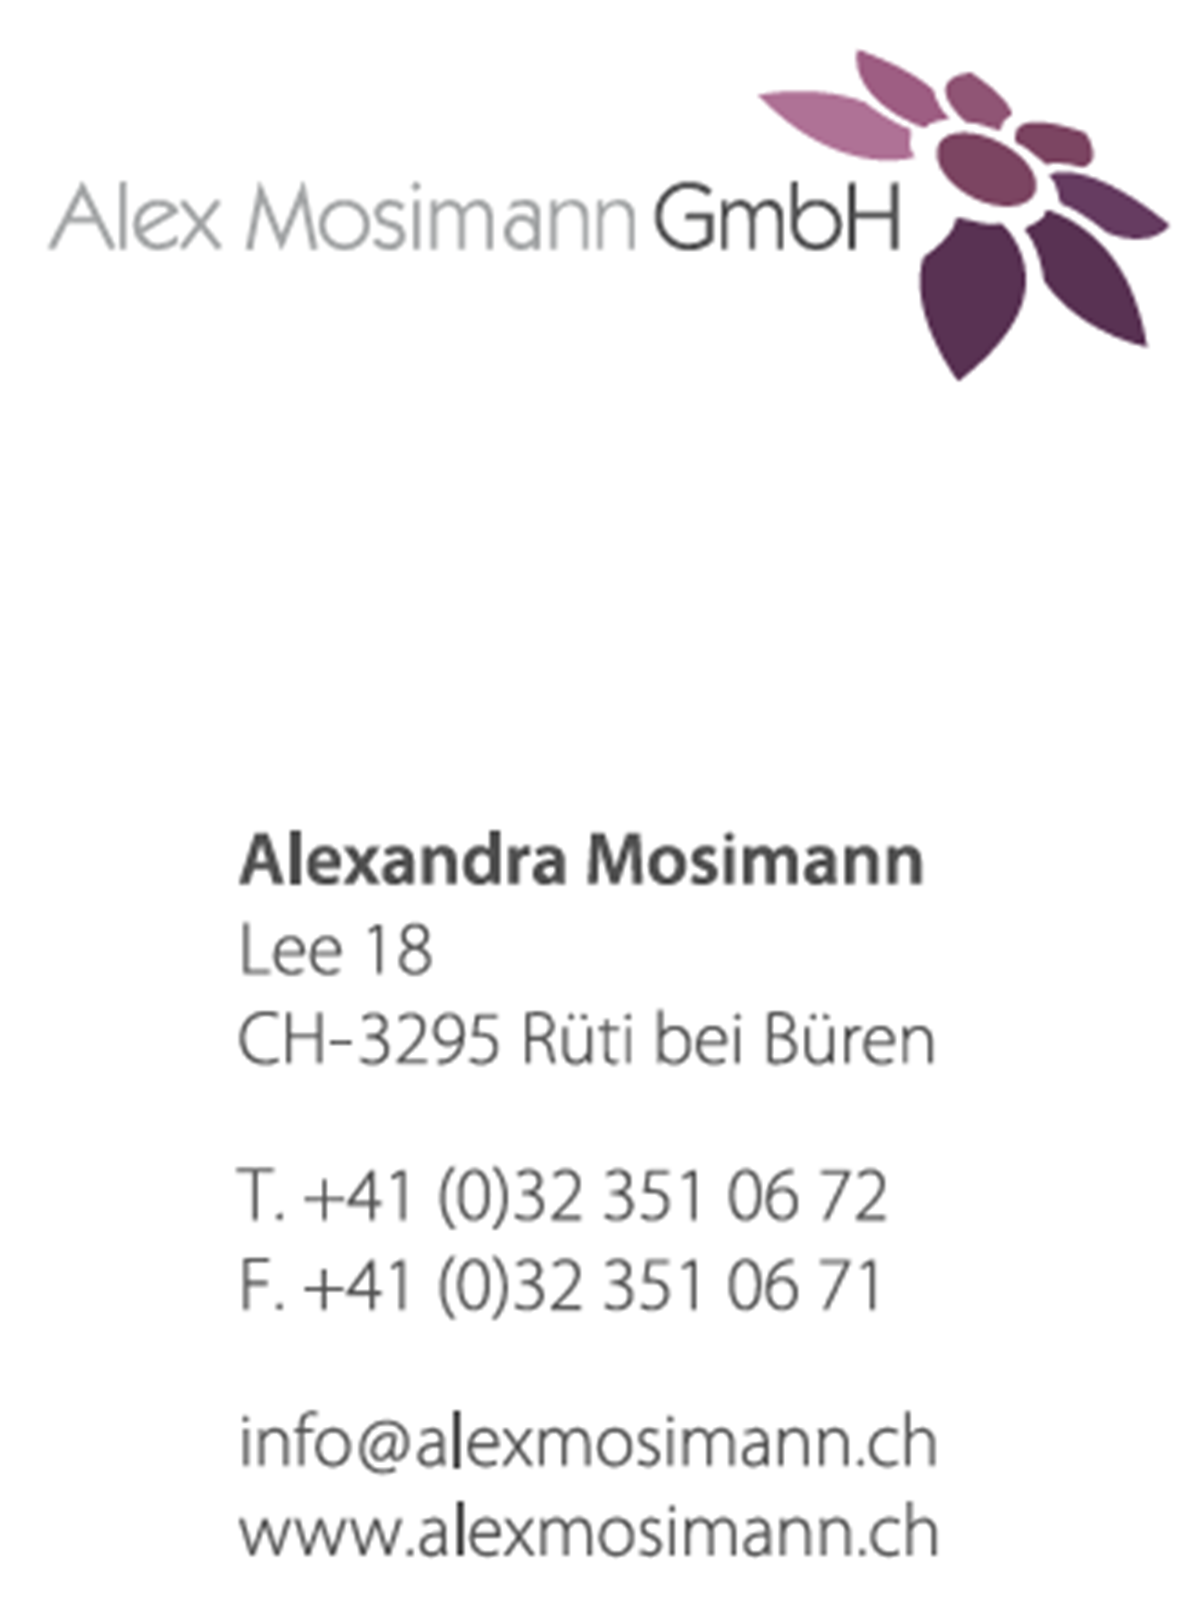 Alex Mosimann GmbH